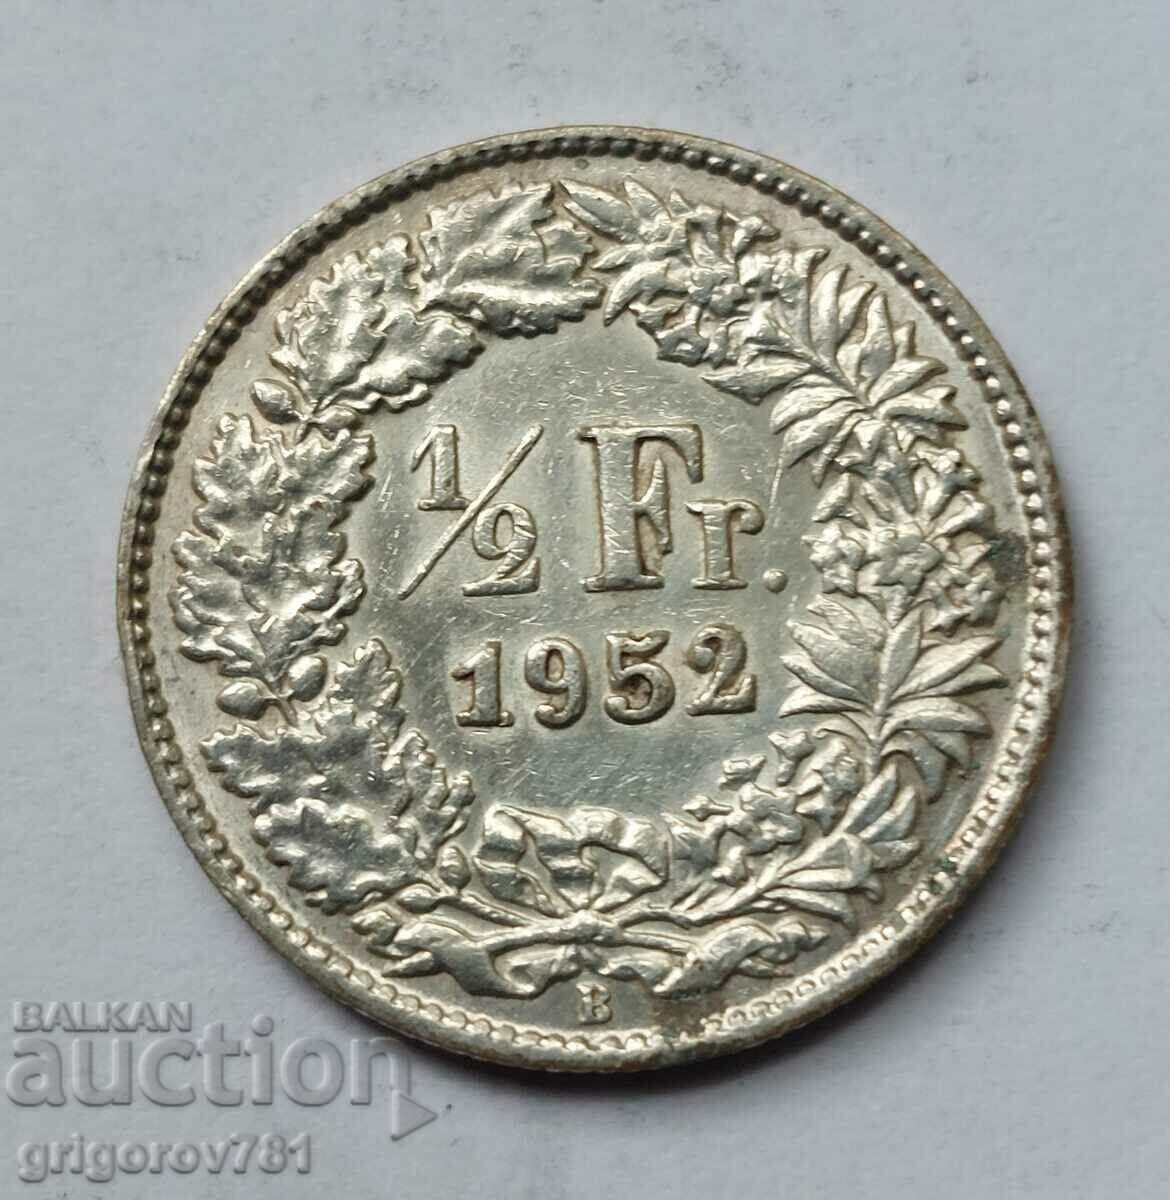 Ασημένιο φράγκο 1/2 Ελβετία 1955 Β - Ασημένιο νόμισμα #8